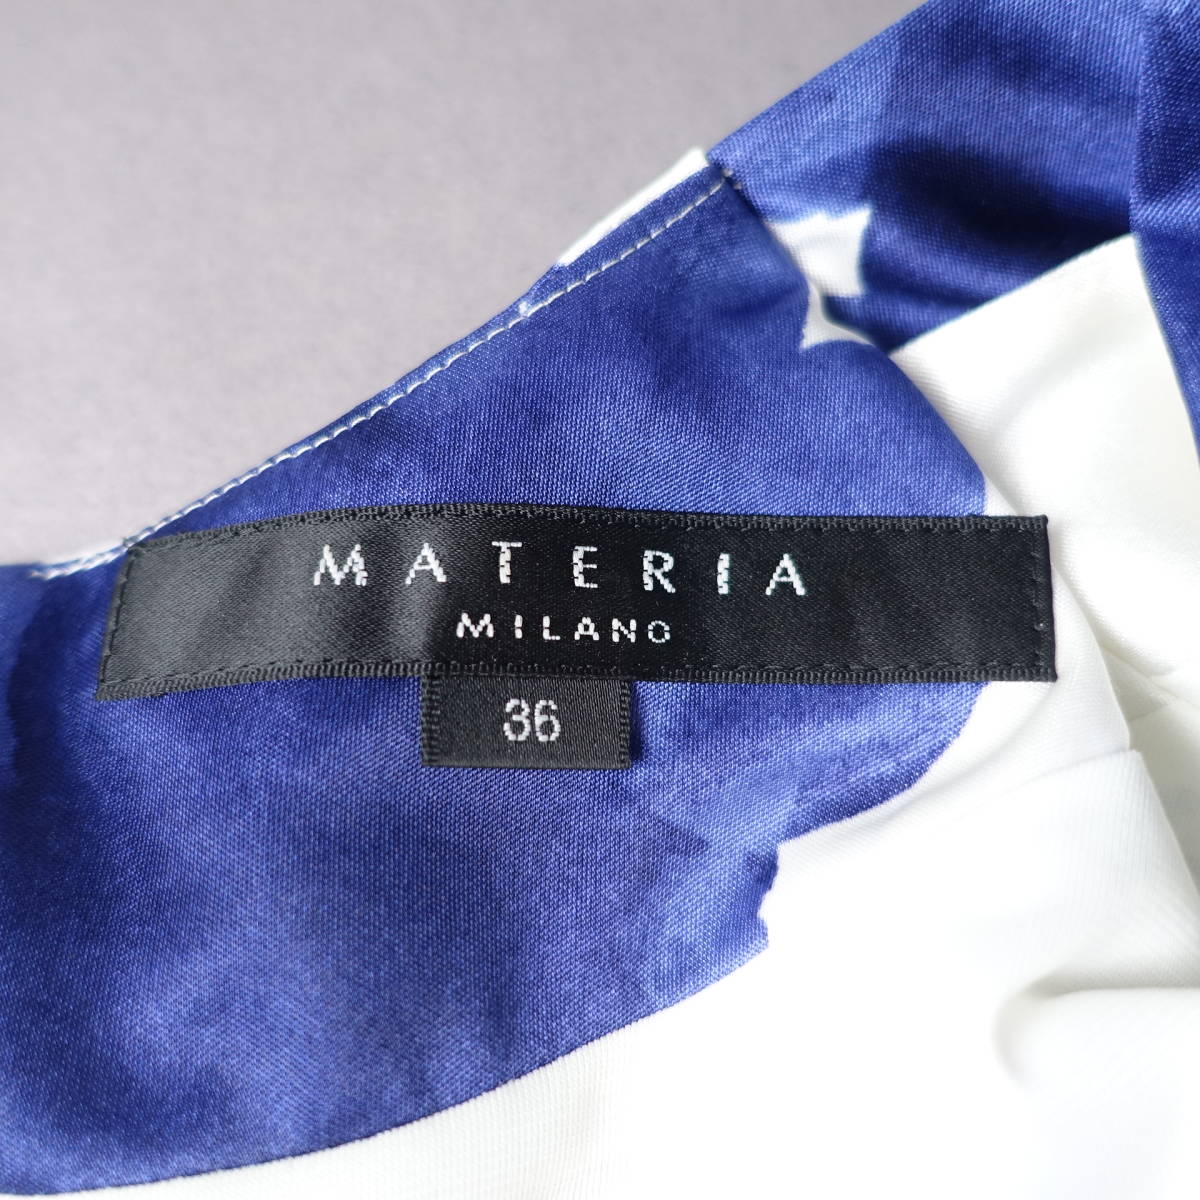 MATERIA MILANO/マテリアミラノ/36/ストレッチワンピース/ホワイト×ブルー/白×青/レディース_画像4